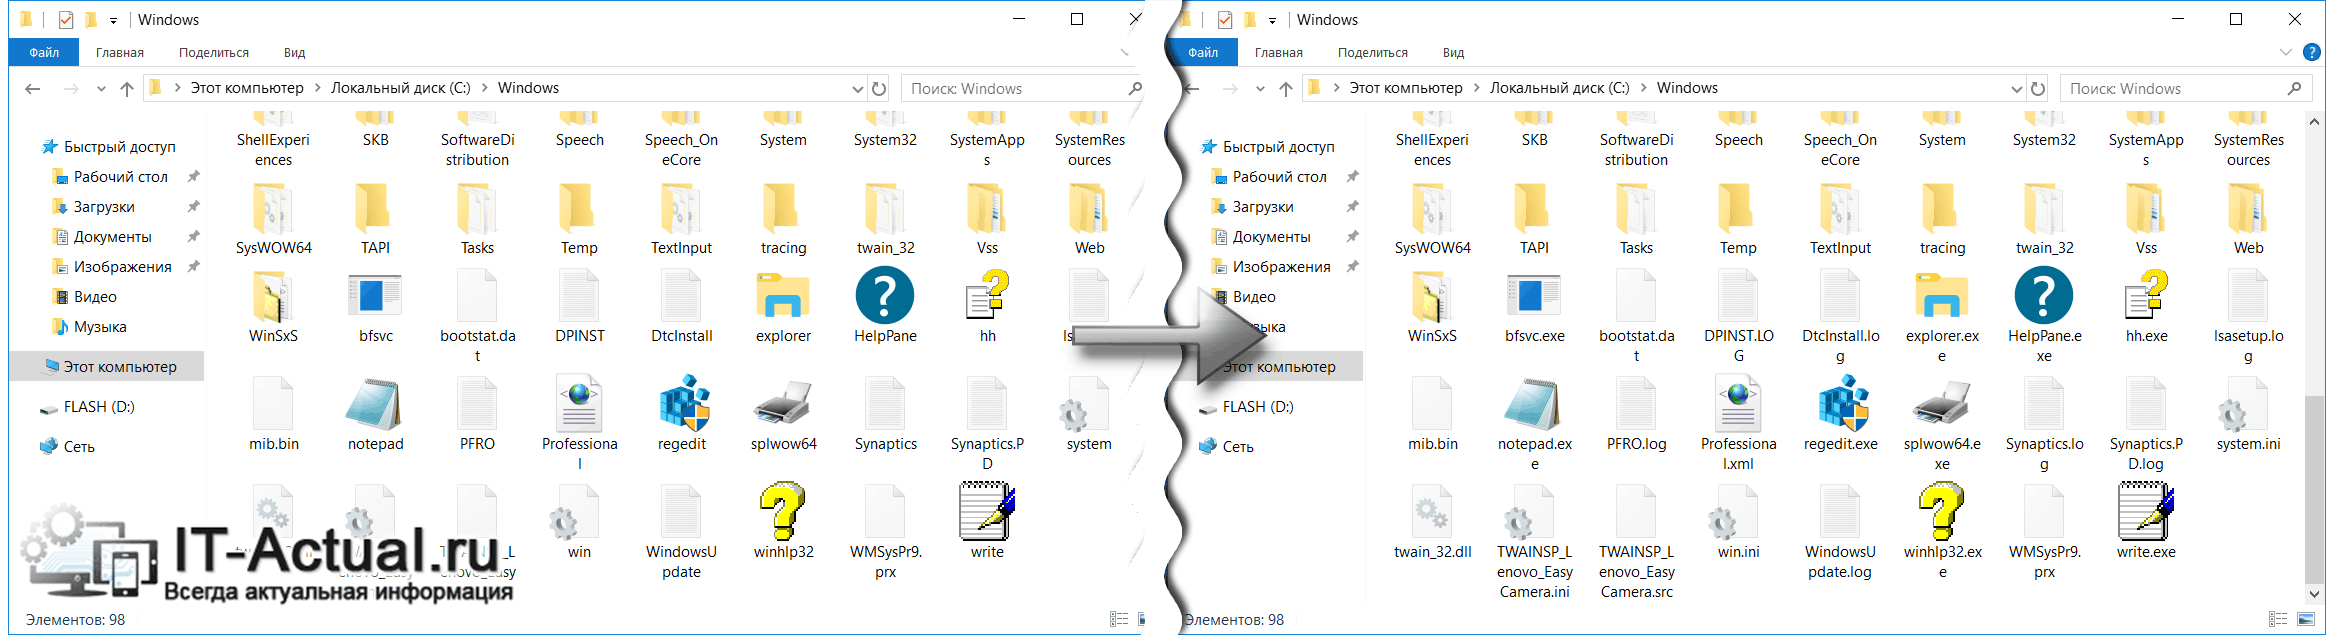 Скрытые расширения файлов в Windows теперь отображаются